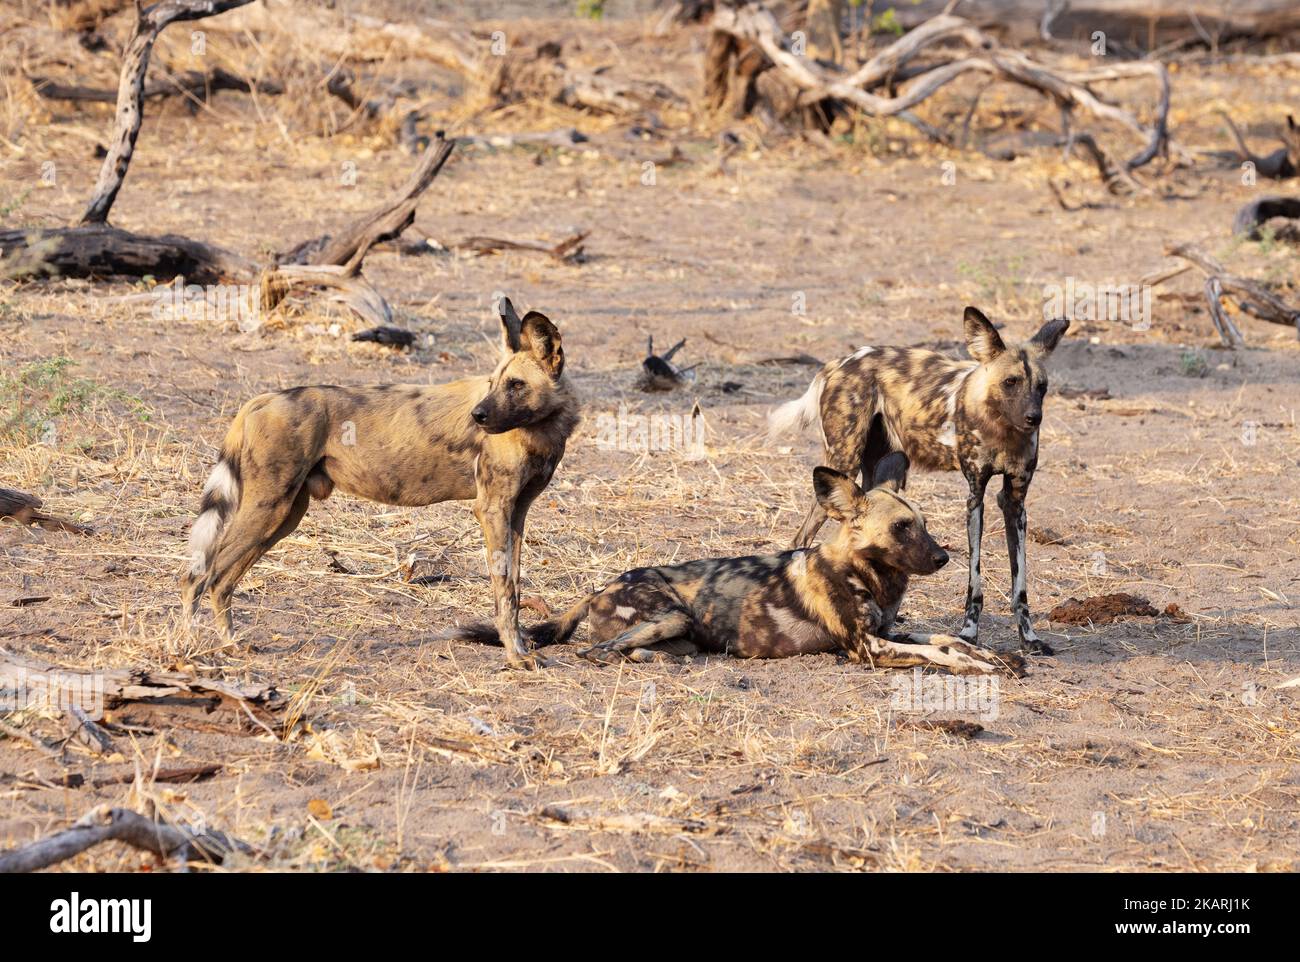 Confezione piccola di tre cani selvatici africani, Lycaon pictus, aka Painted Dog, Moremi Game Reserve, Botswana Africa. Fauna selvatica africana. Foto Stock